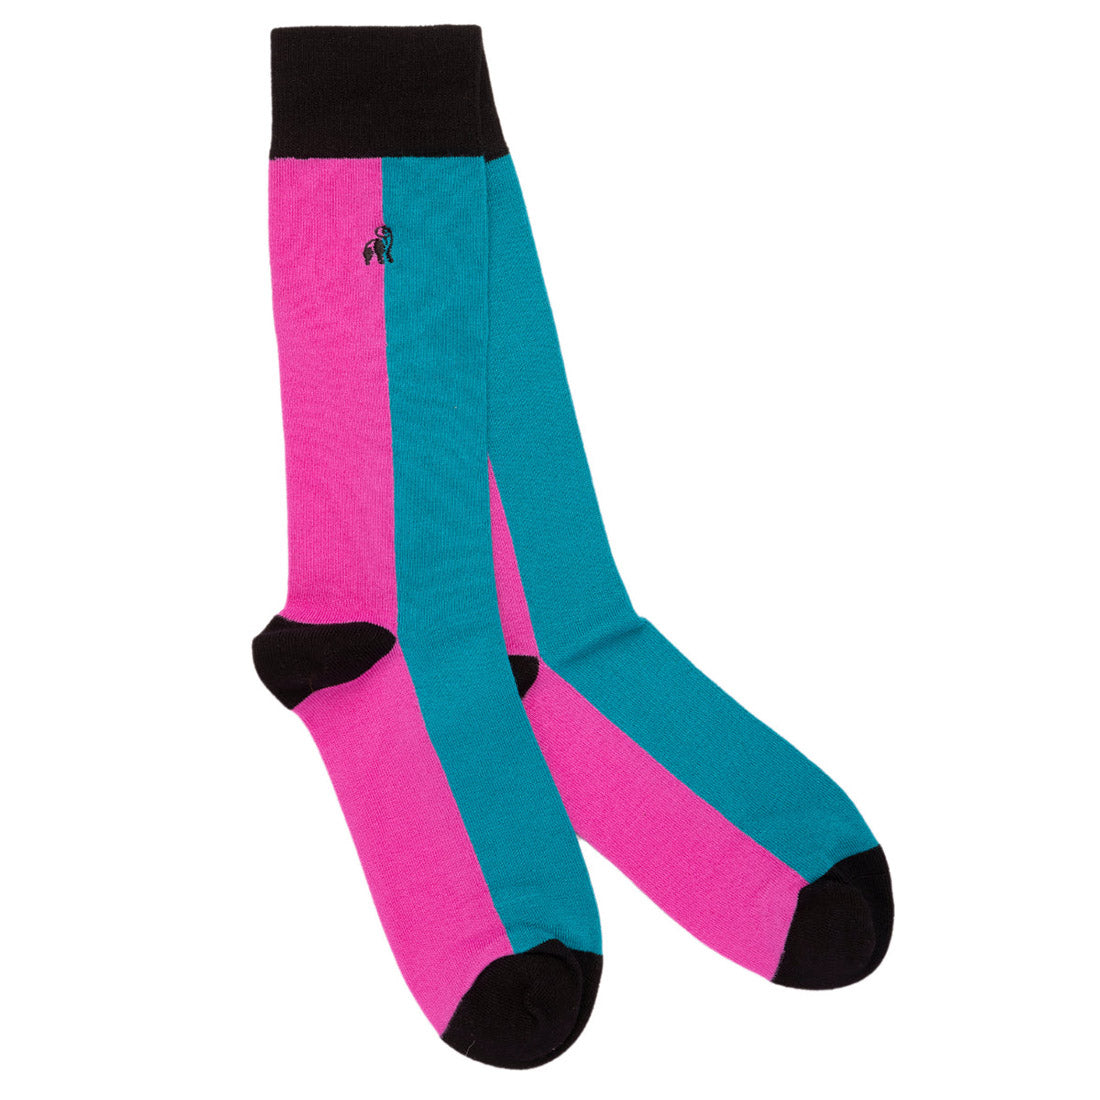 socks-pink-aqua-vertical-striped-bamboo-socks-1_e8010a81-a1fc-40ef-9fba-320911111560.jpg